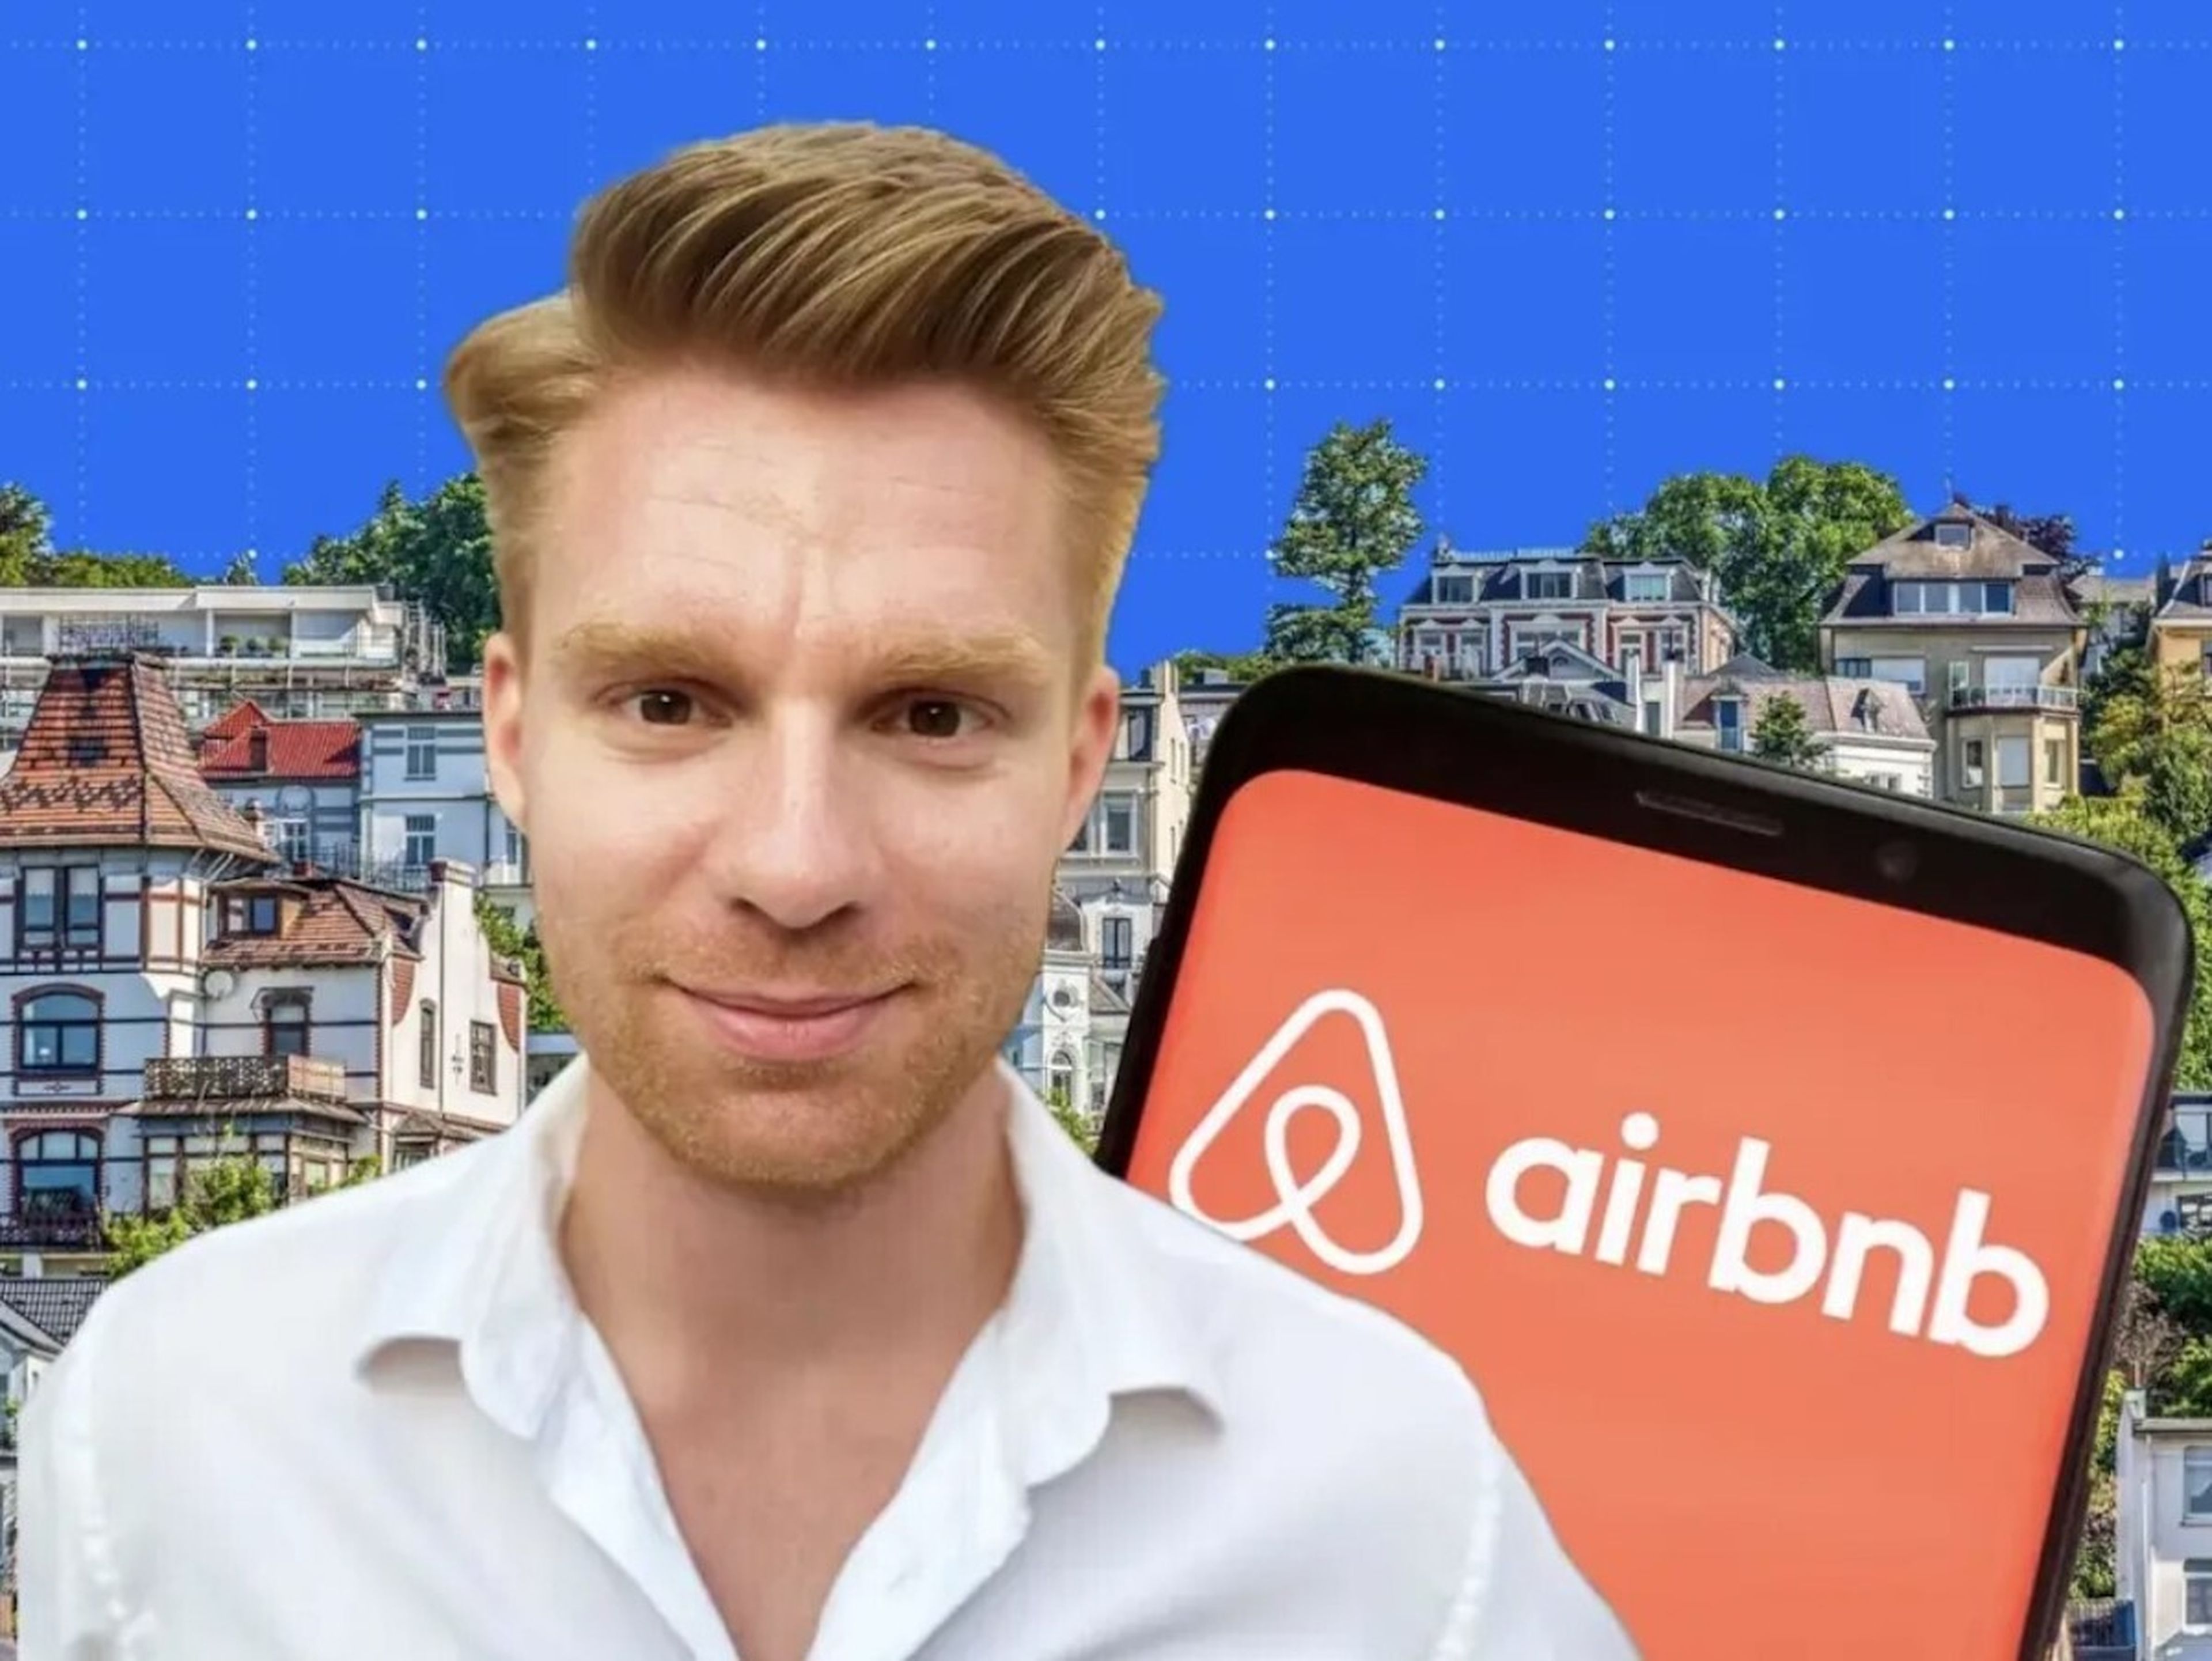 El anfitrión de Airbnb, Paul Müller.